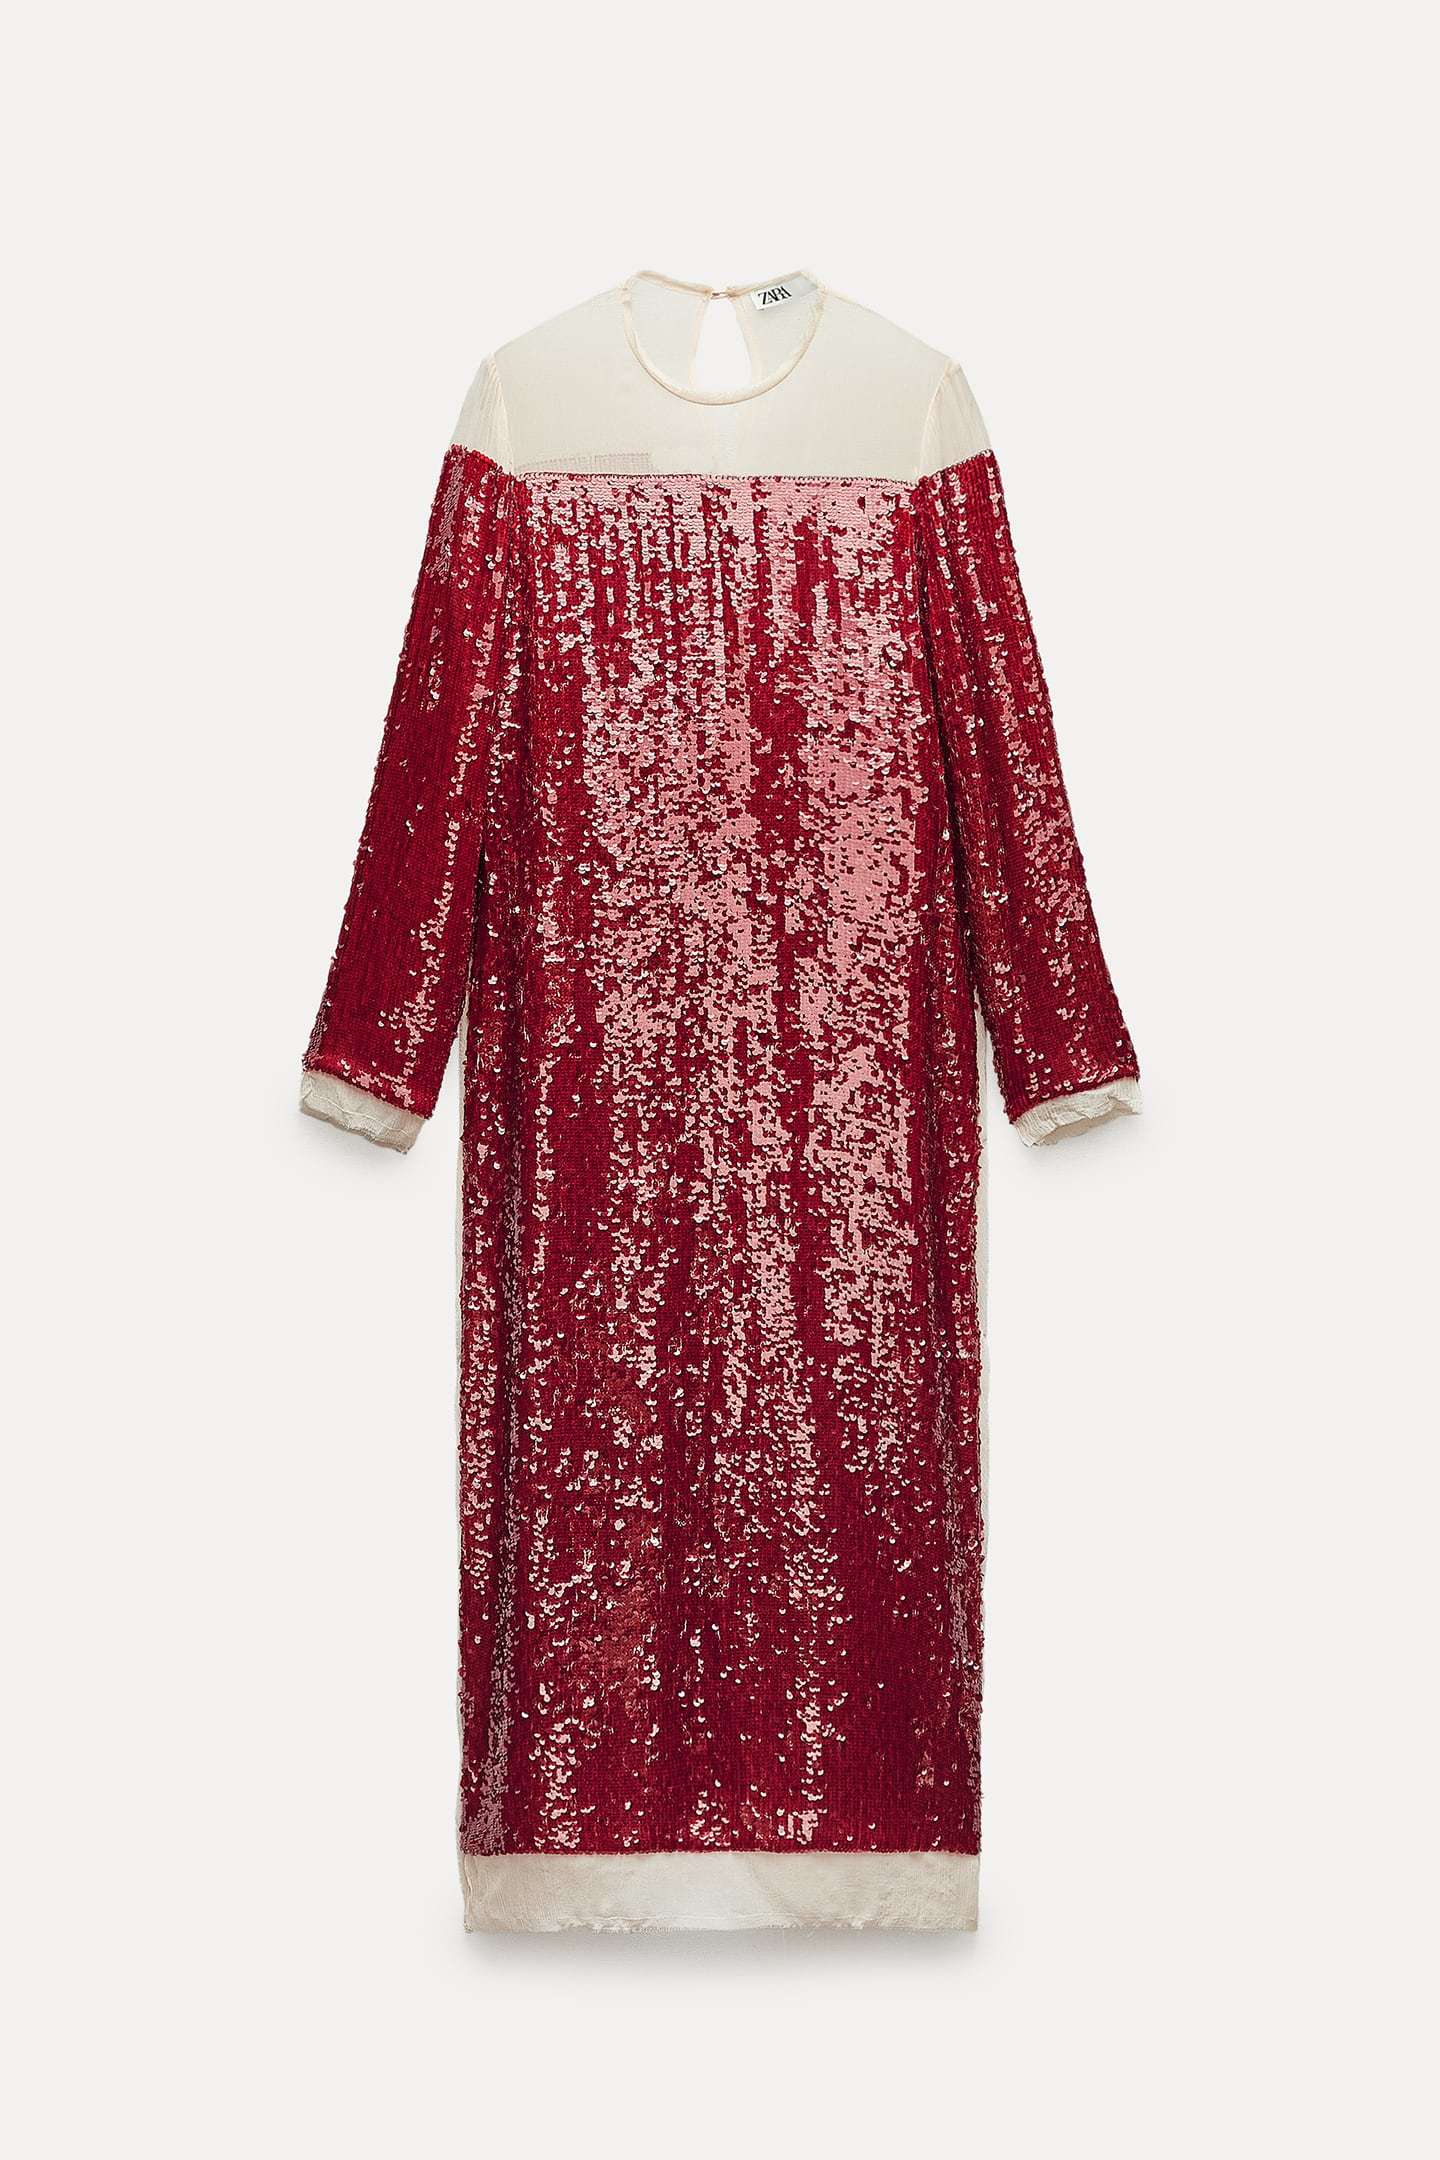 Estos son los vestidos de Zara de nueva temporada: largo de lentejuelas